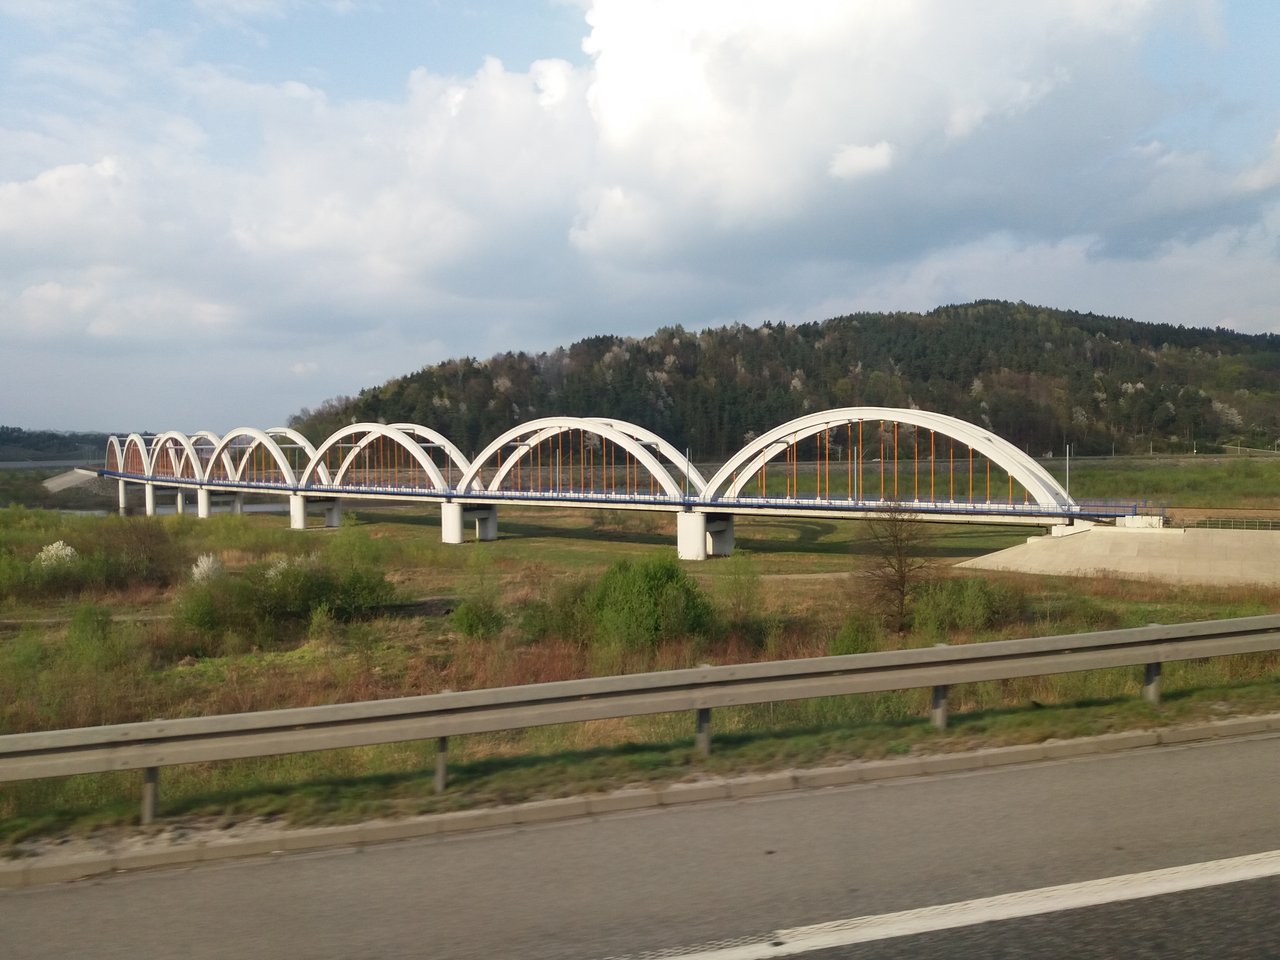 Poľský most niekde na slovensko - poľskom pohraničí...